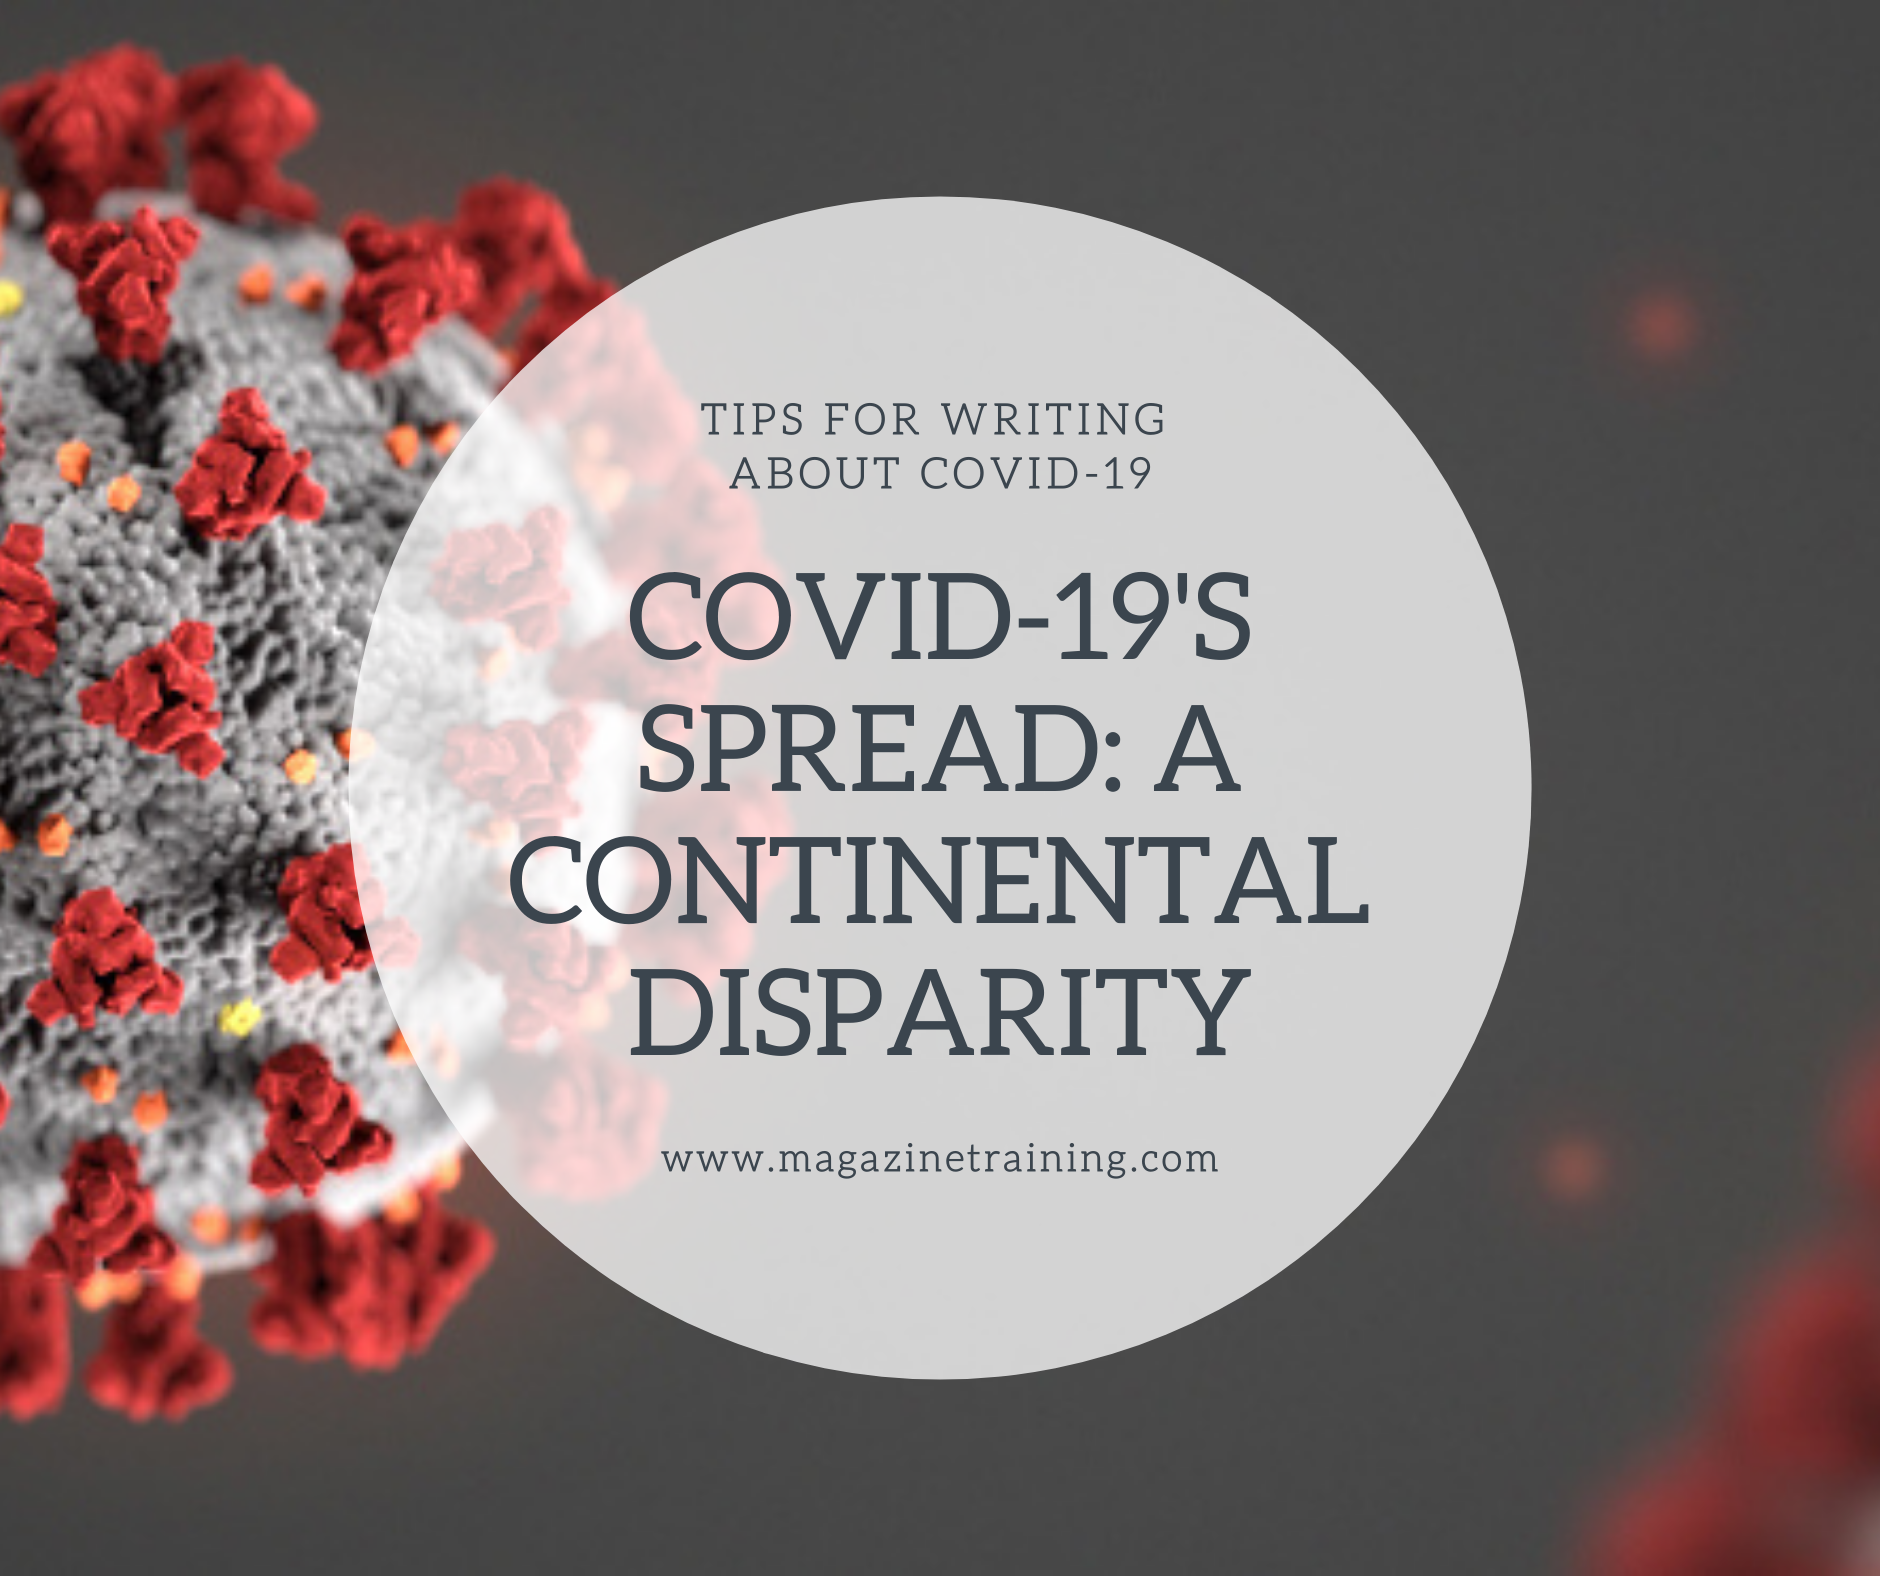 COVID-19 spread